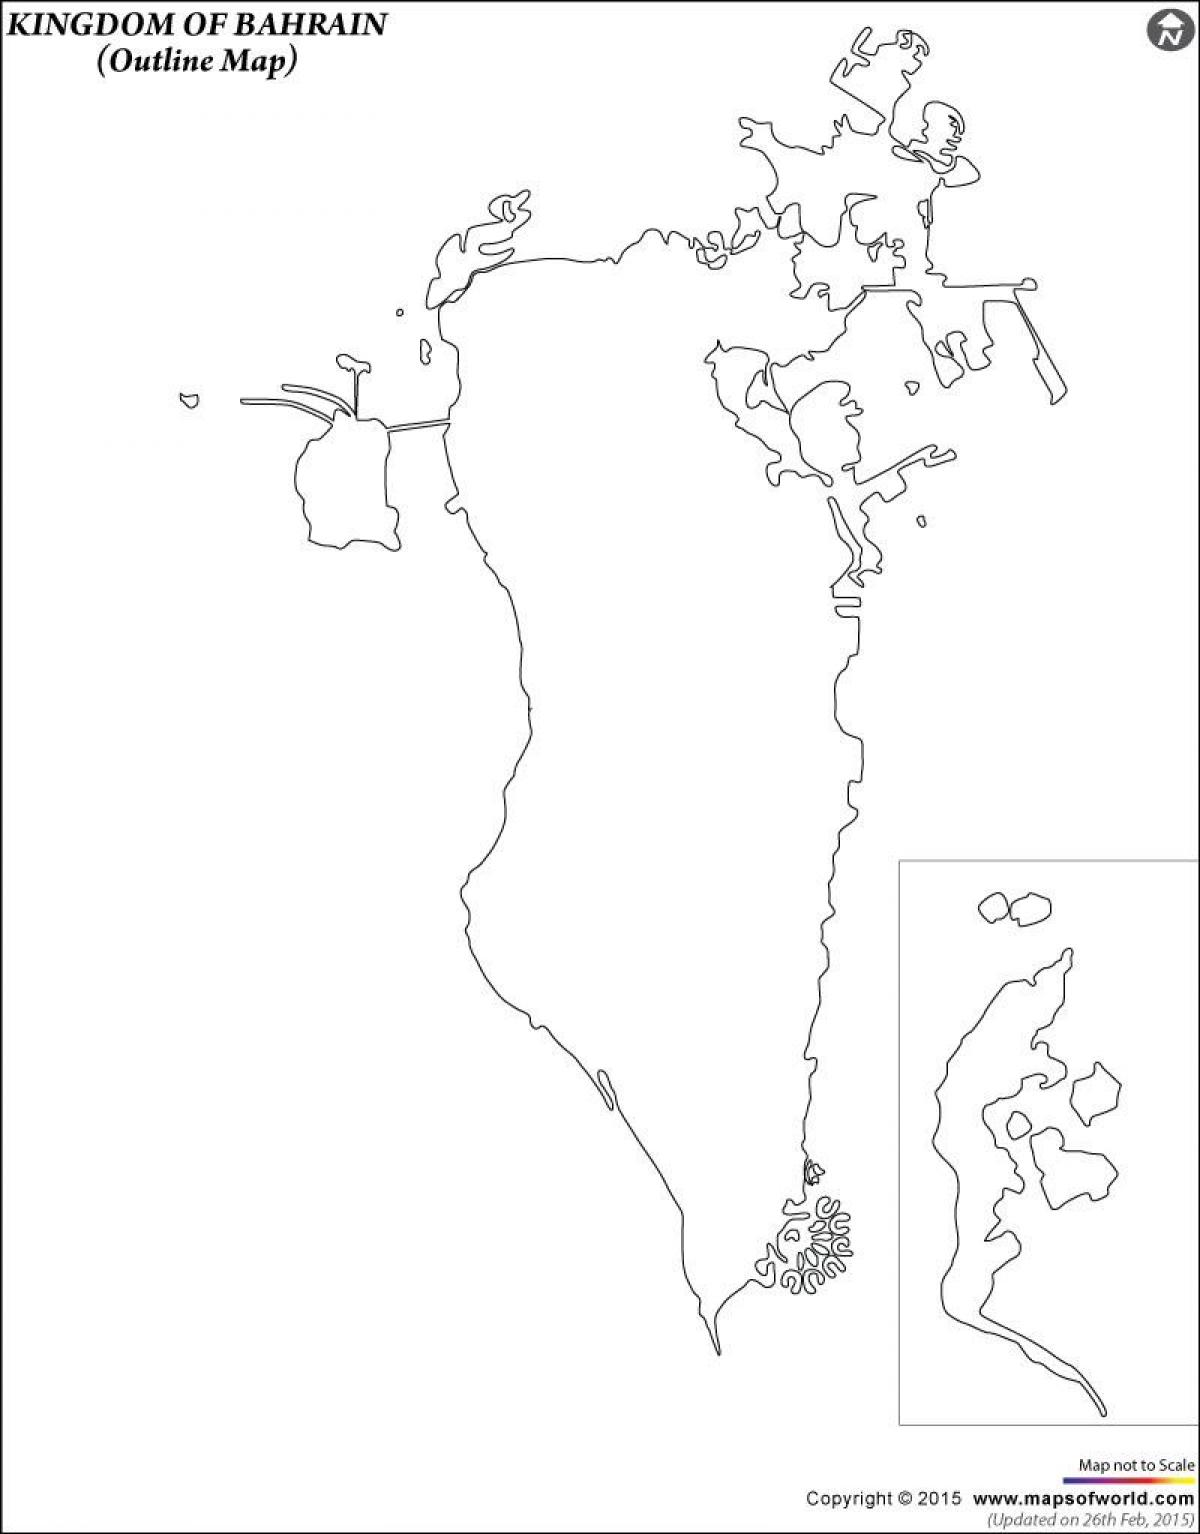 नक्शा बहरीन के नक्शे रूपरेखा